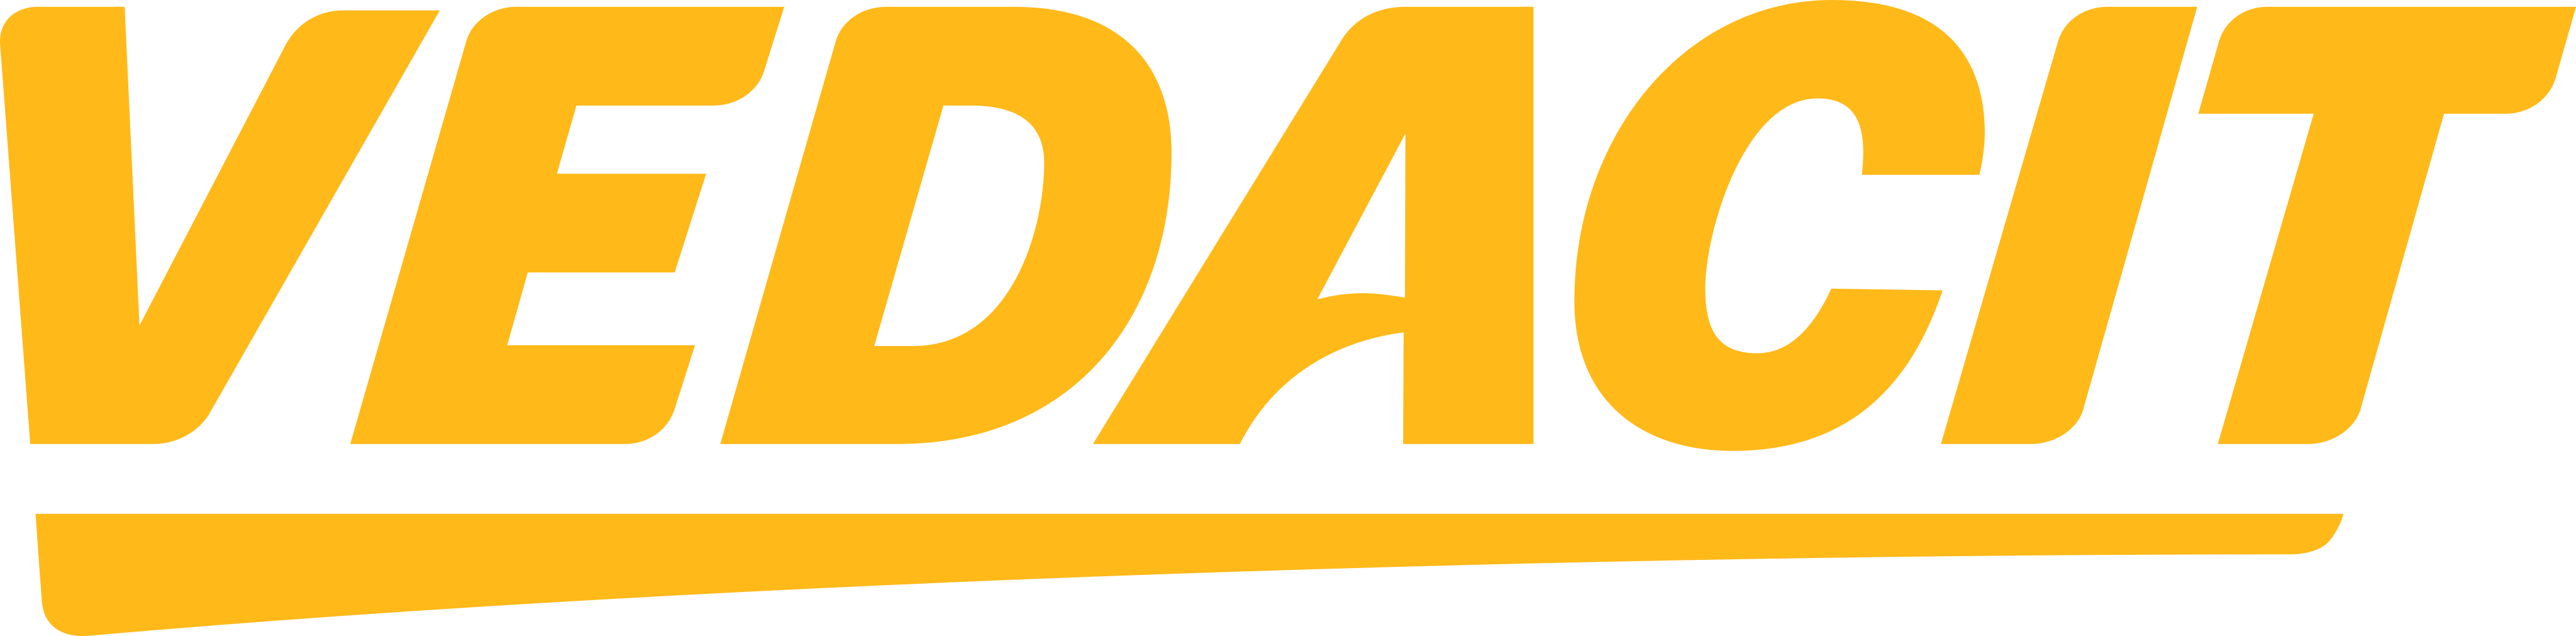 vedacit-logo-1